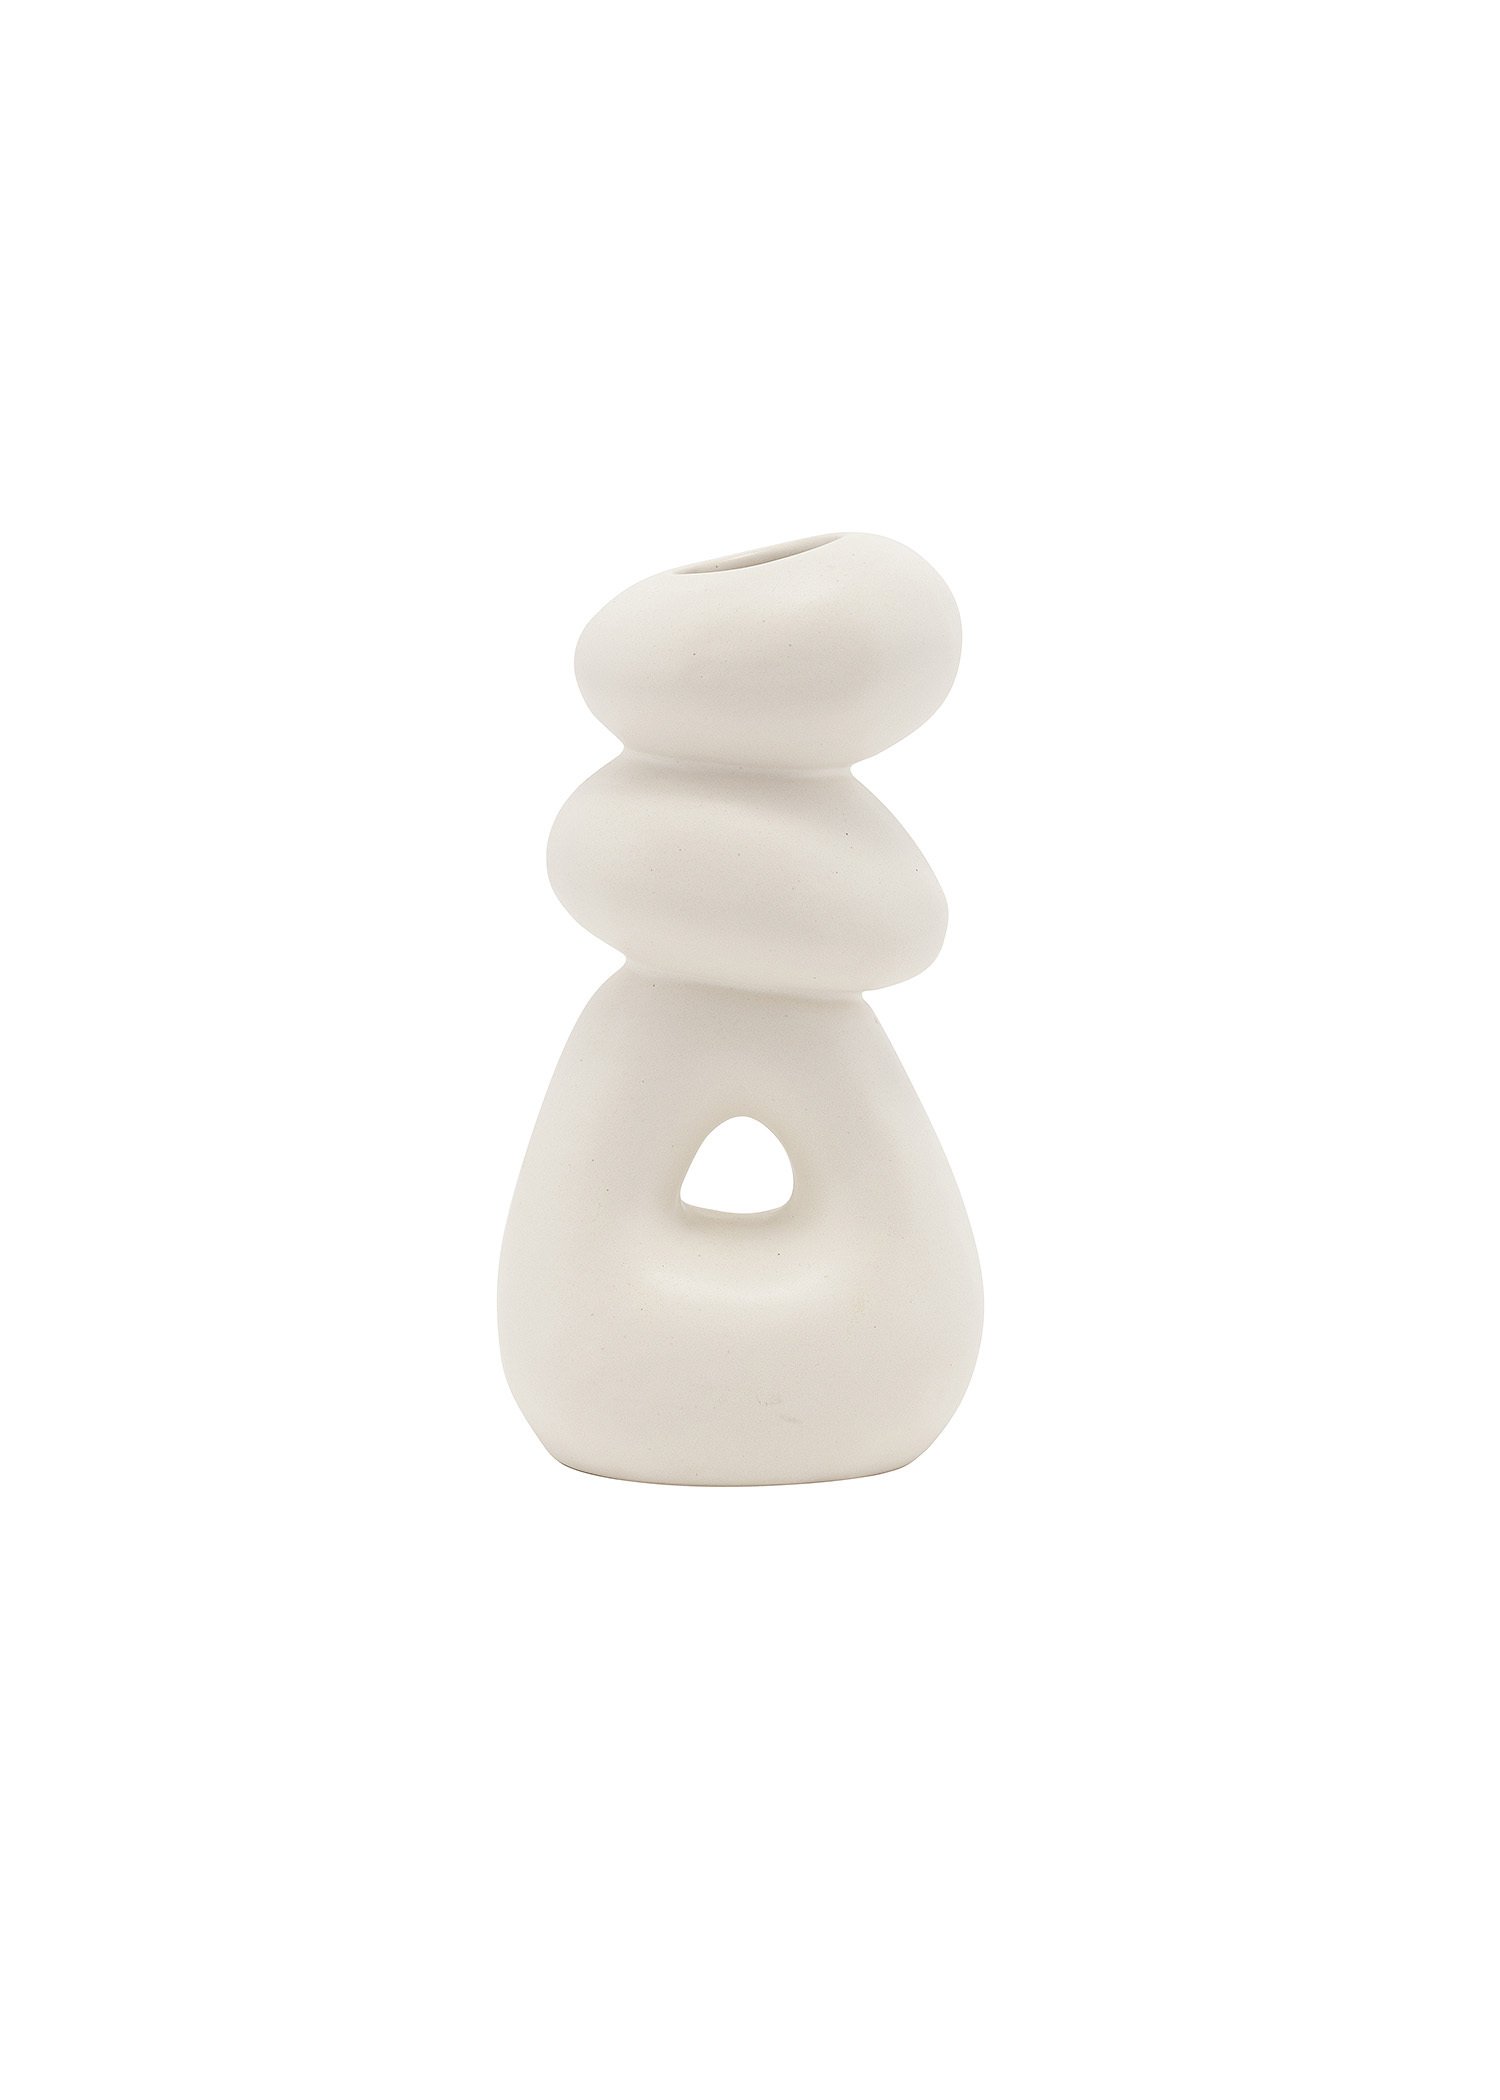 White stoneware vase Image 1